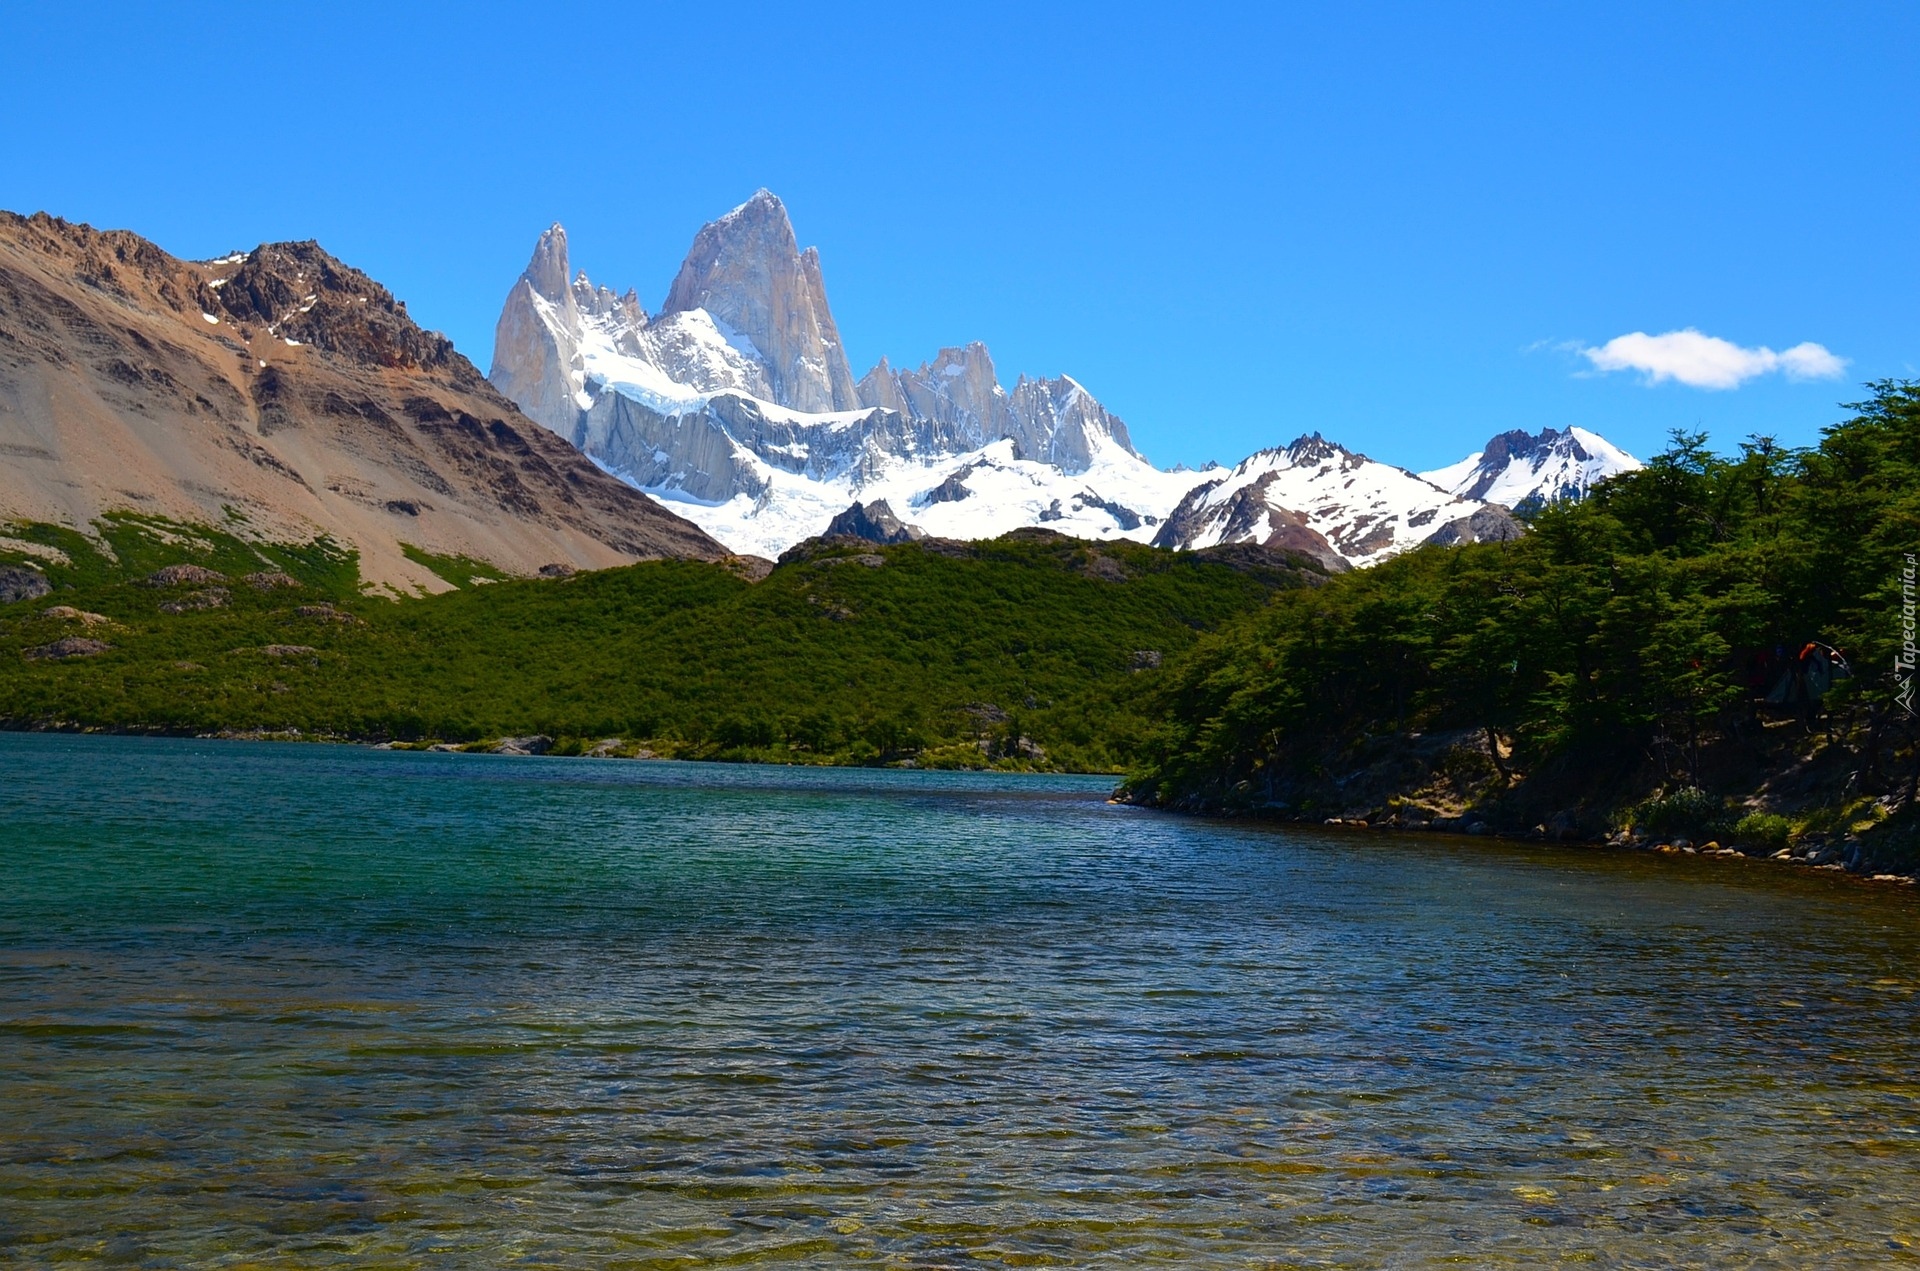 Jezioro, Góry, Szczyt Fitz Roy, Patagonia, Argentyna